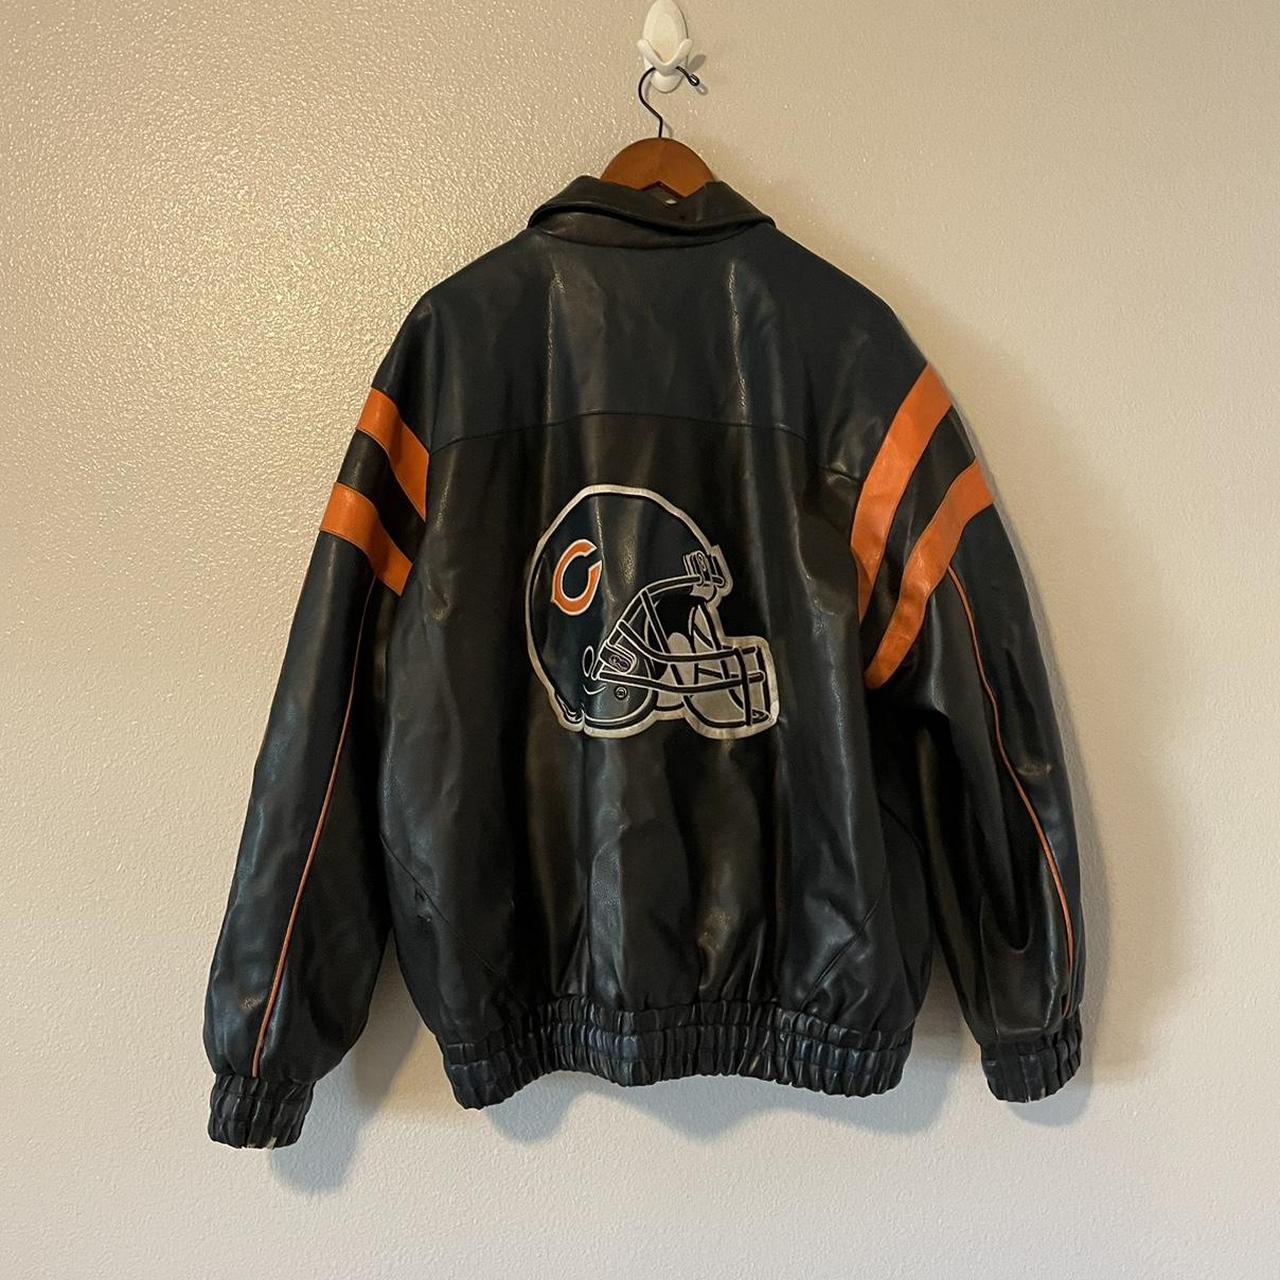 Vintage Chicago Bears Leather Jacket Mens large.... - Depop